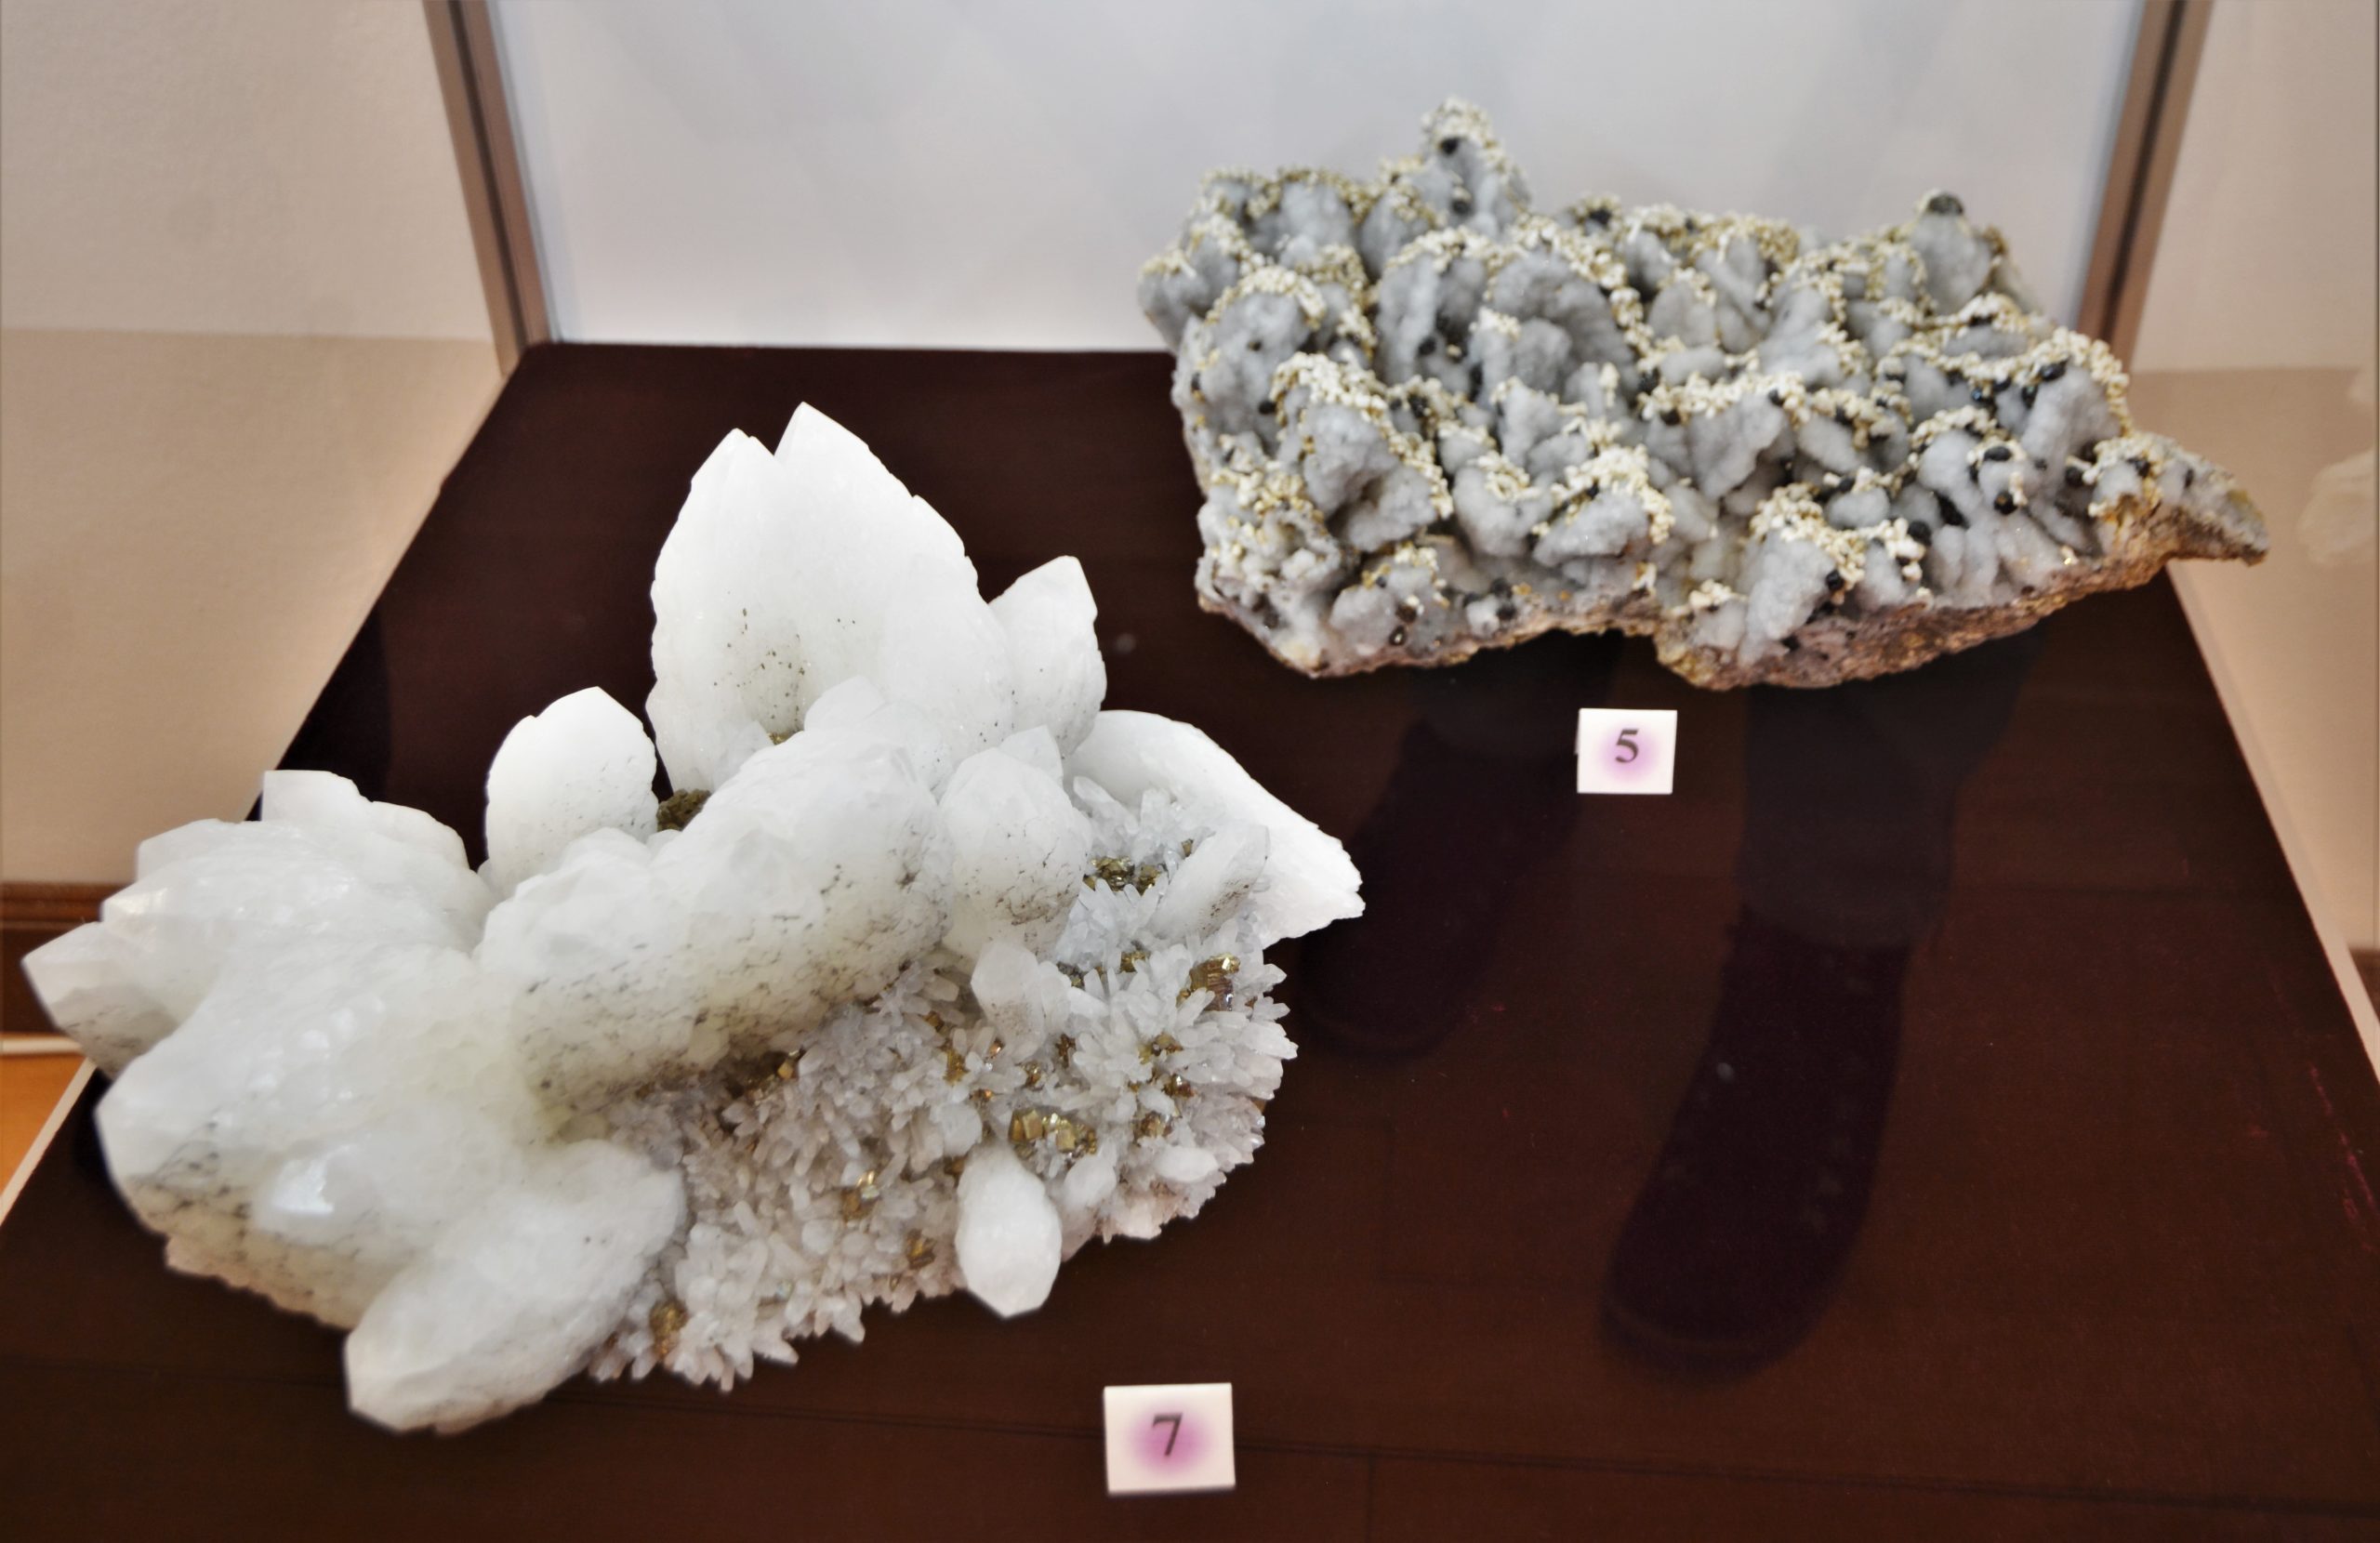 expozitie minerale oradea (13)